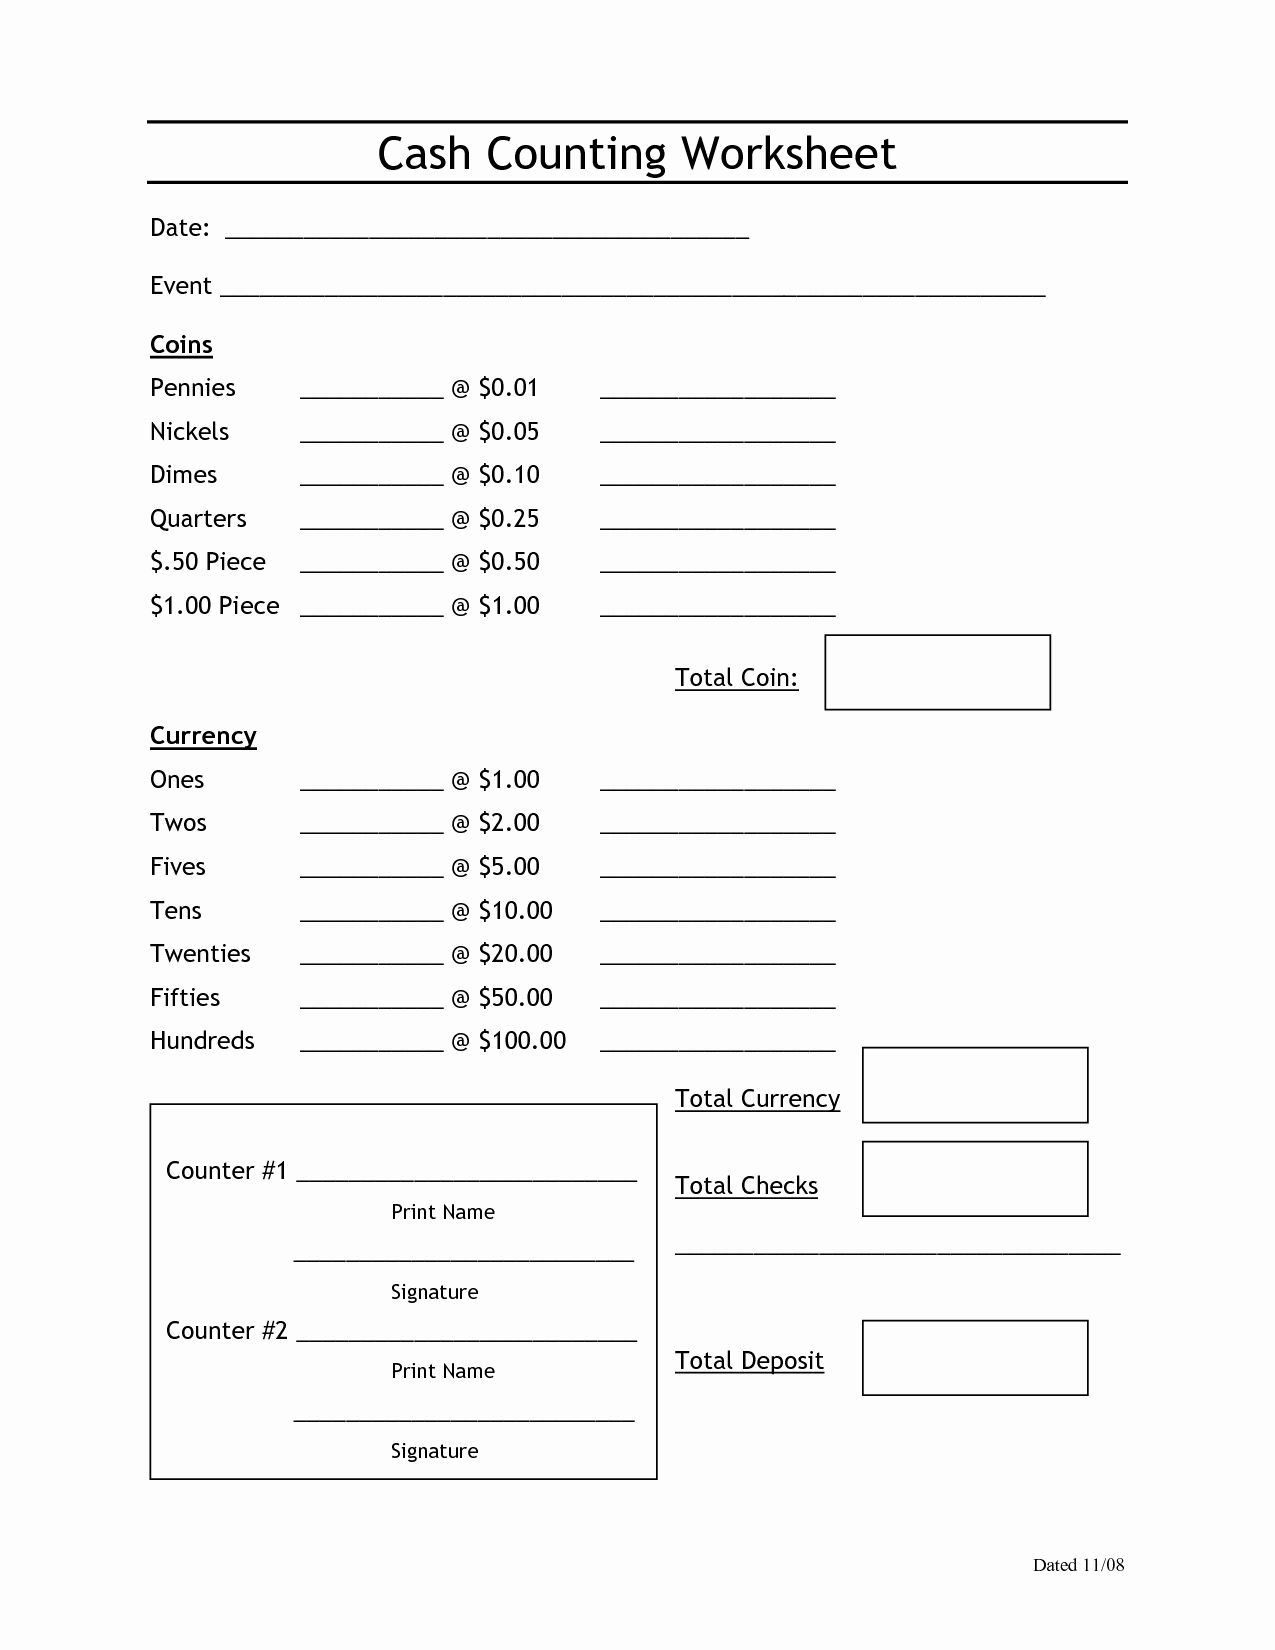 Cash Drawer Count Sheet Best Of Sample Cash Count Sheet Invitation Samples Blog